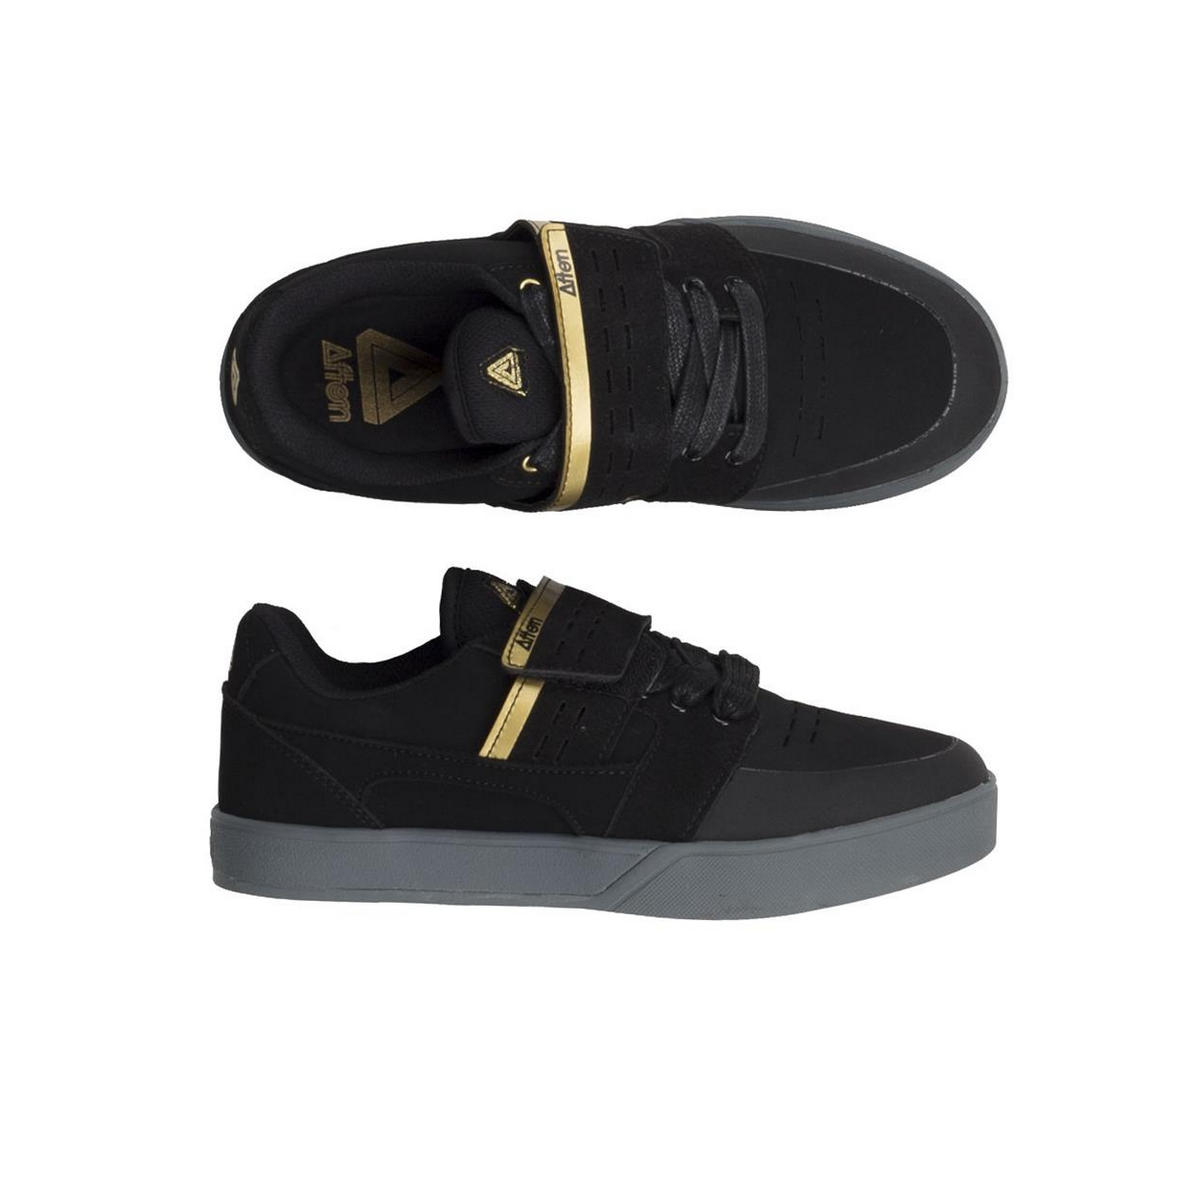 MTB Shoes Vectal SPD Black/Gold Size 46